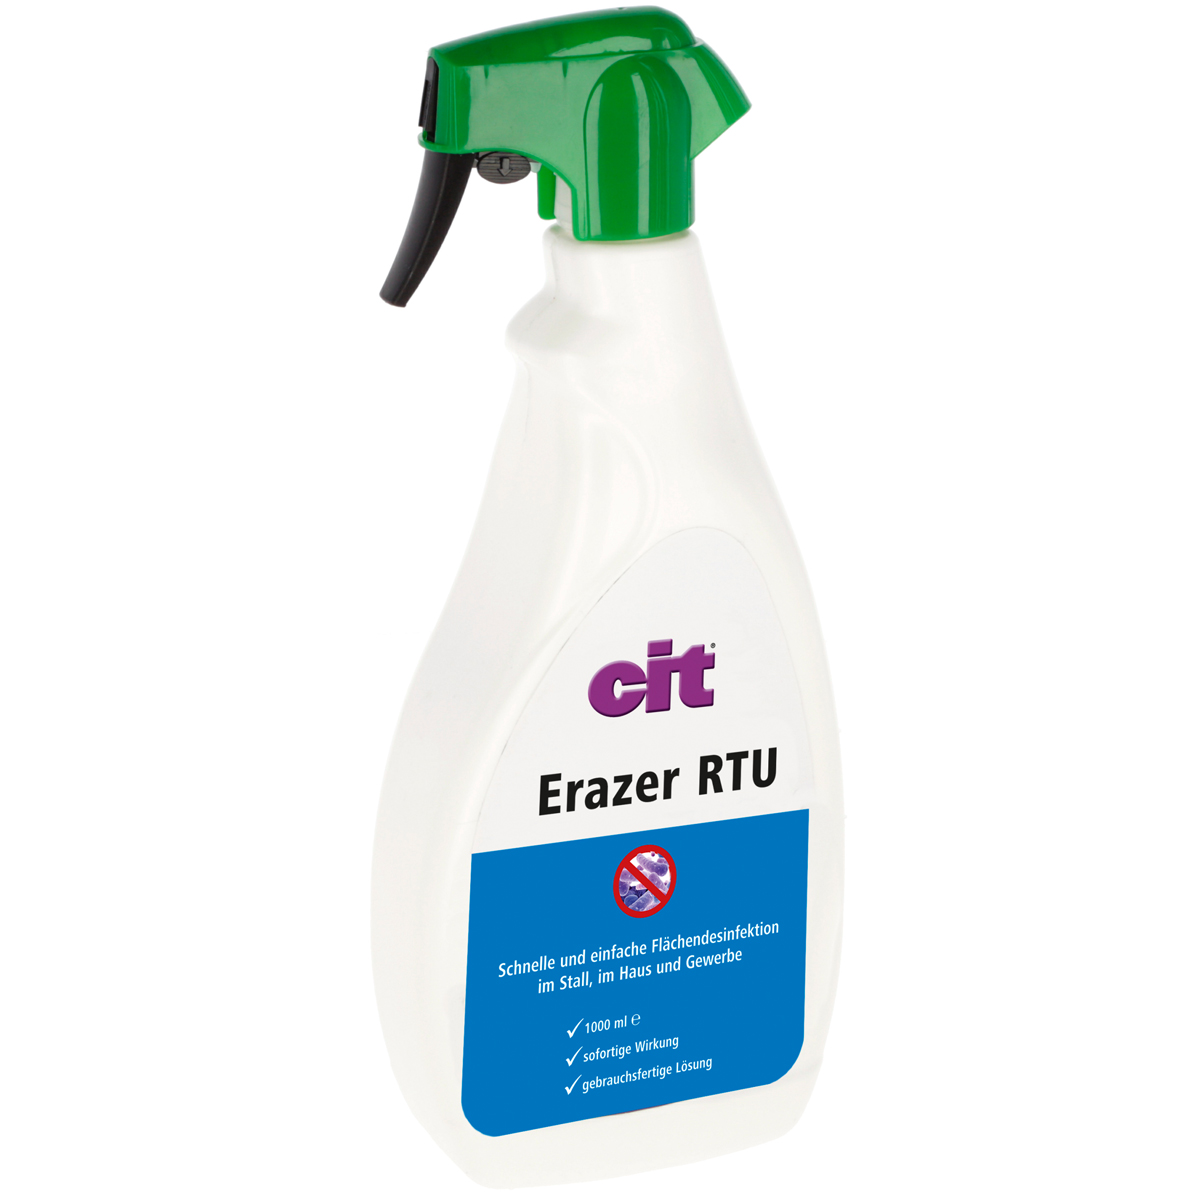 Cit Erazer RTU surface disinfection spray